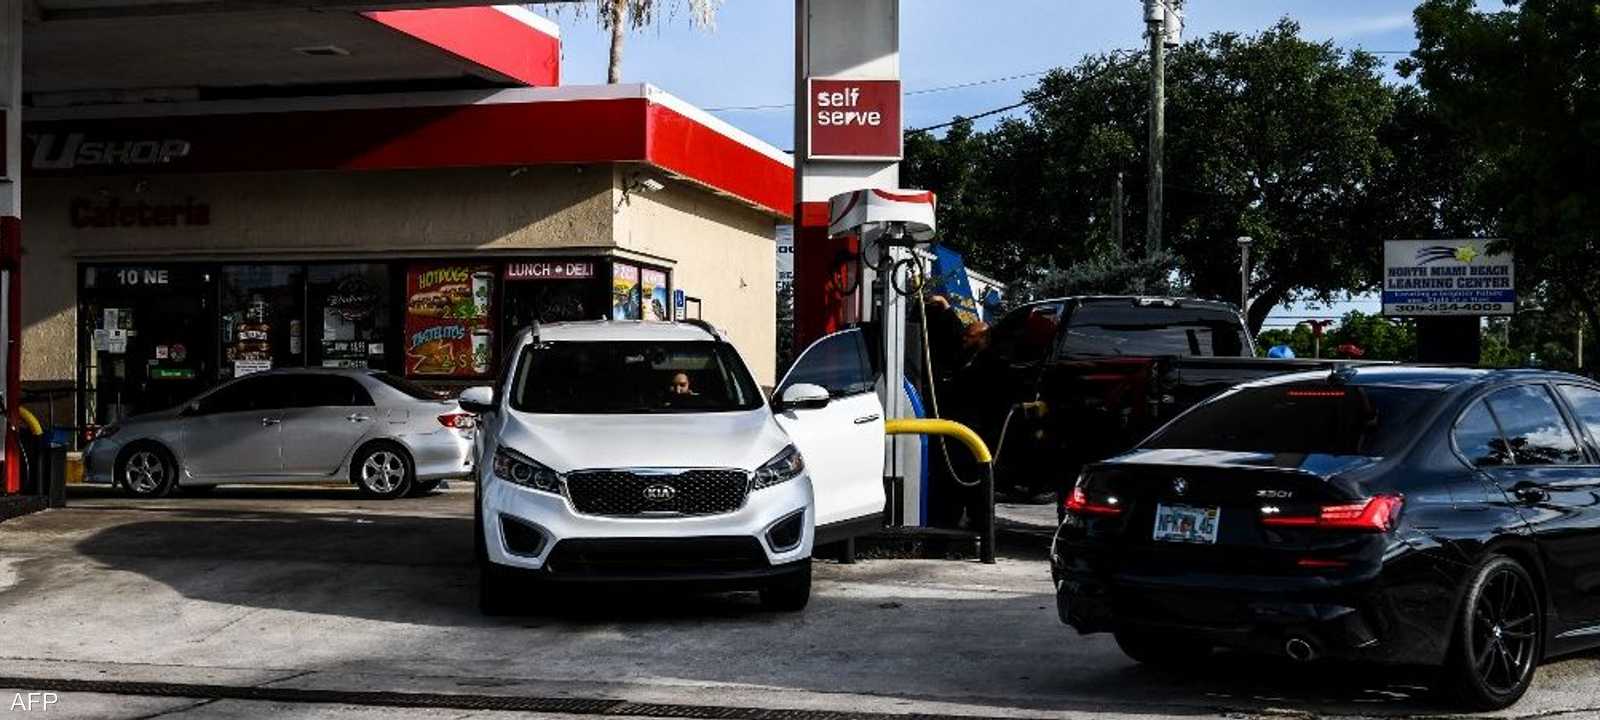 بحث خفض ضريبة البنزين في الولايات المتحدة